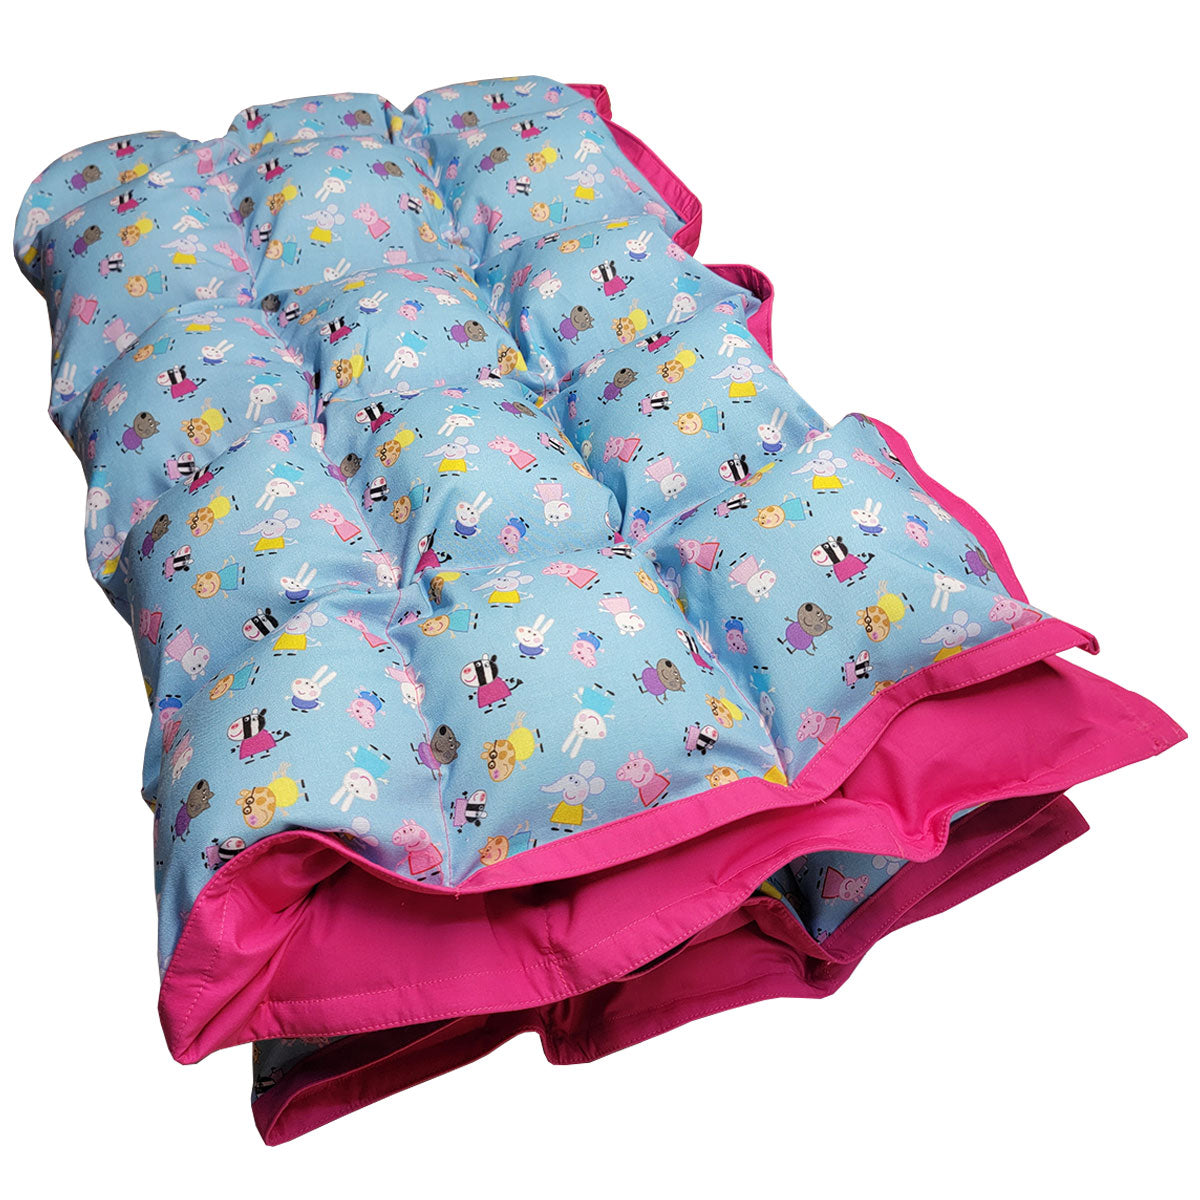 Custom Weighted Blanket - Peppa Pig